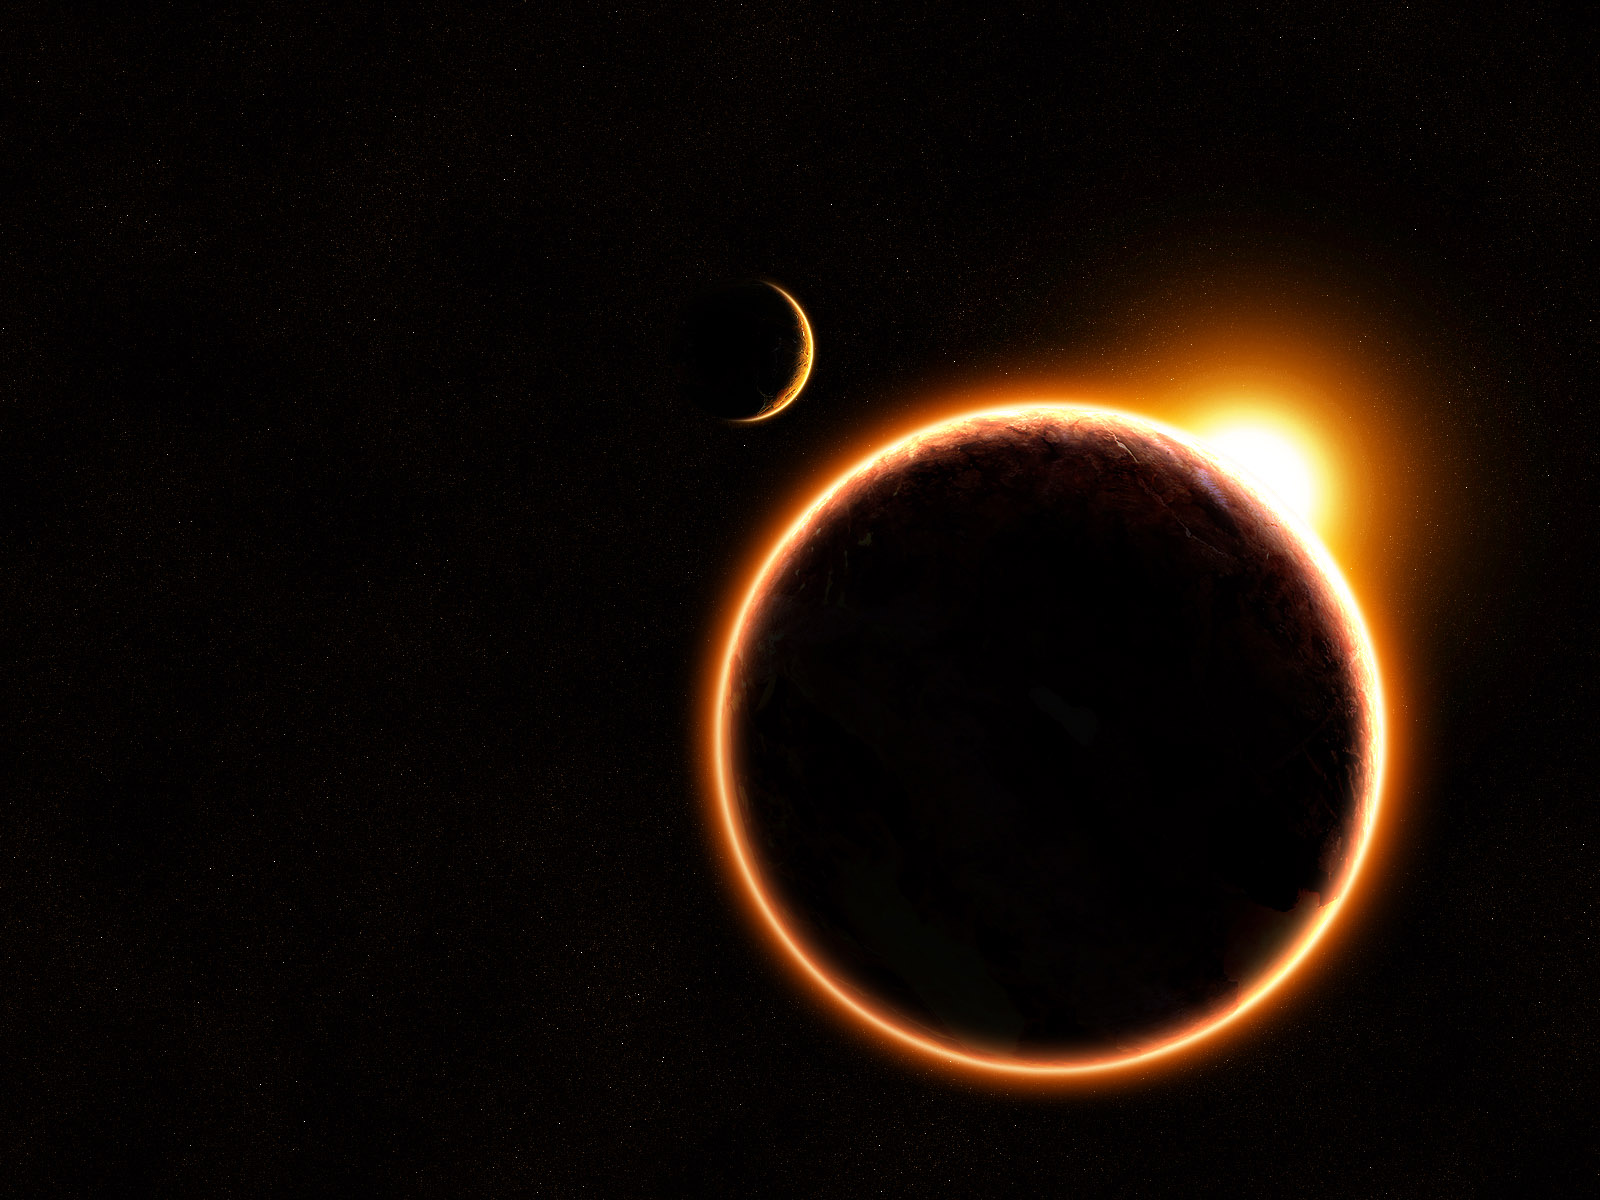 Fond d'ecran Eclipse solaire de la Terre